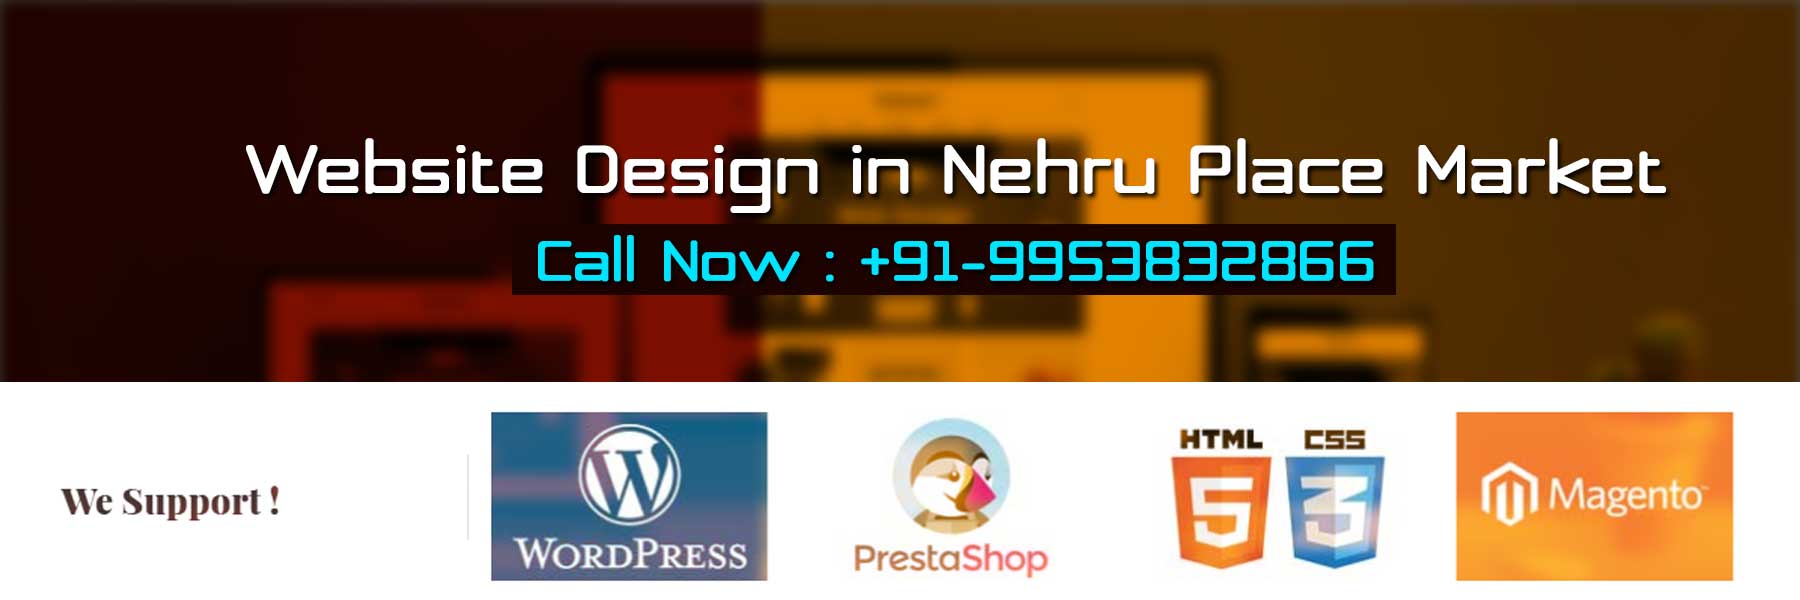 Website Design in Nehru Place Market